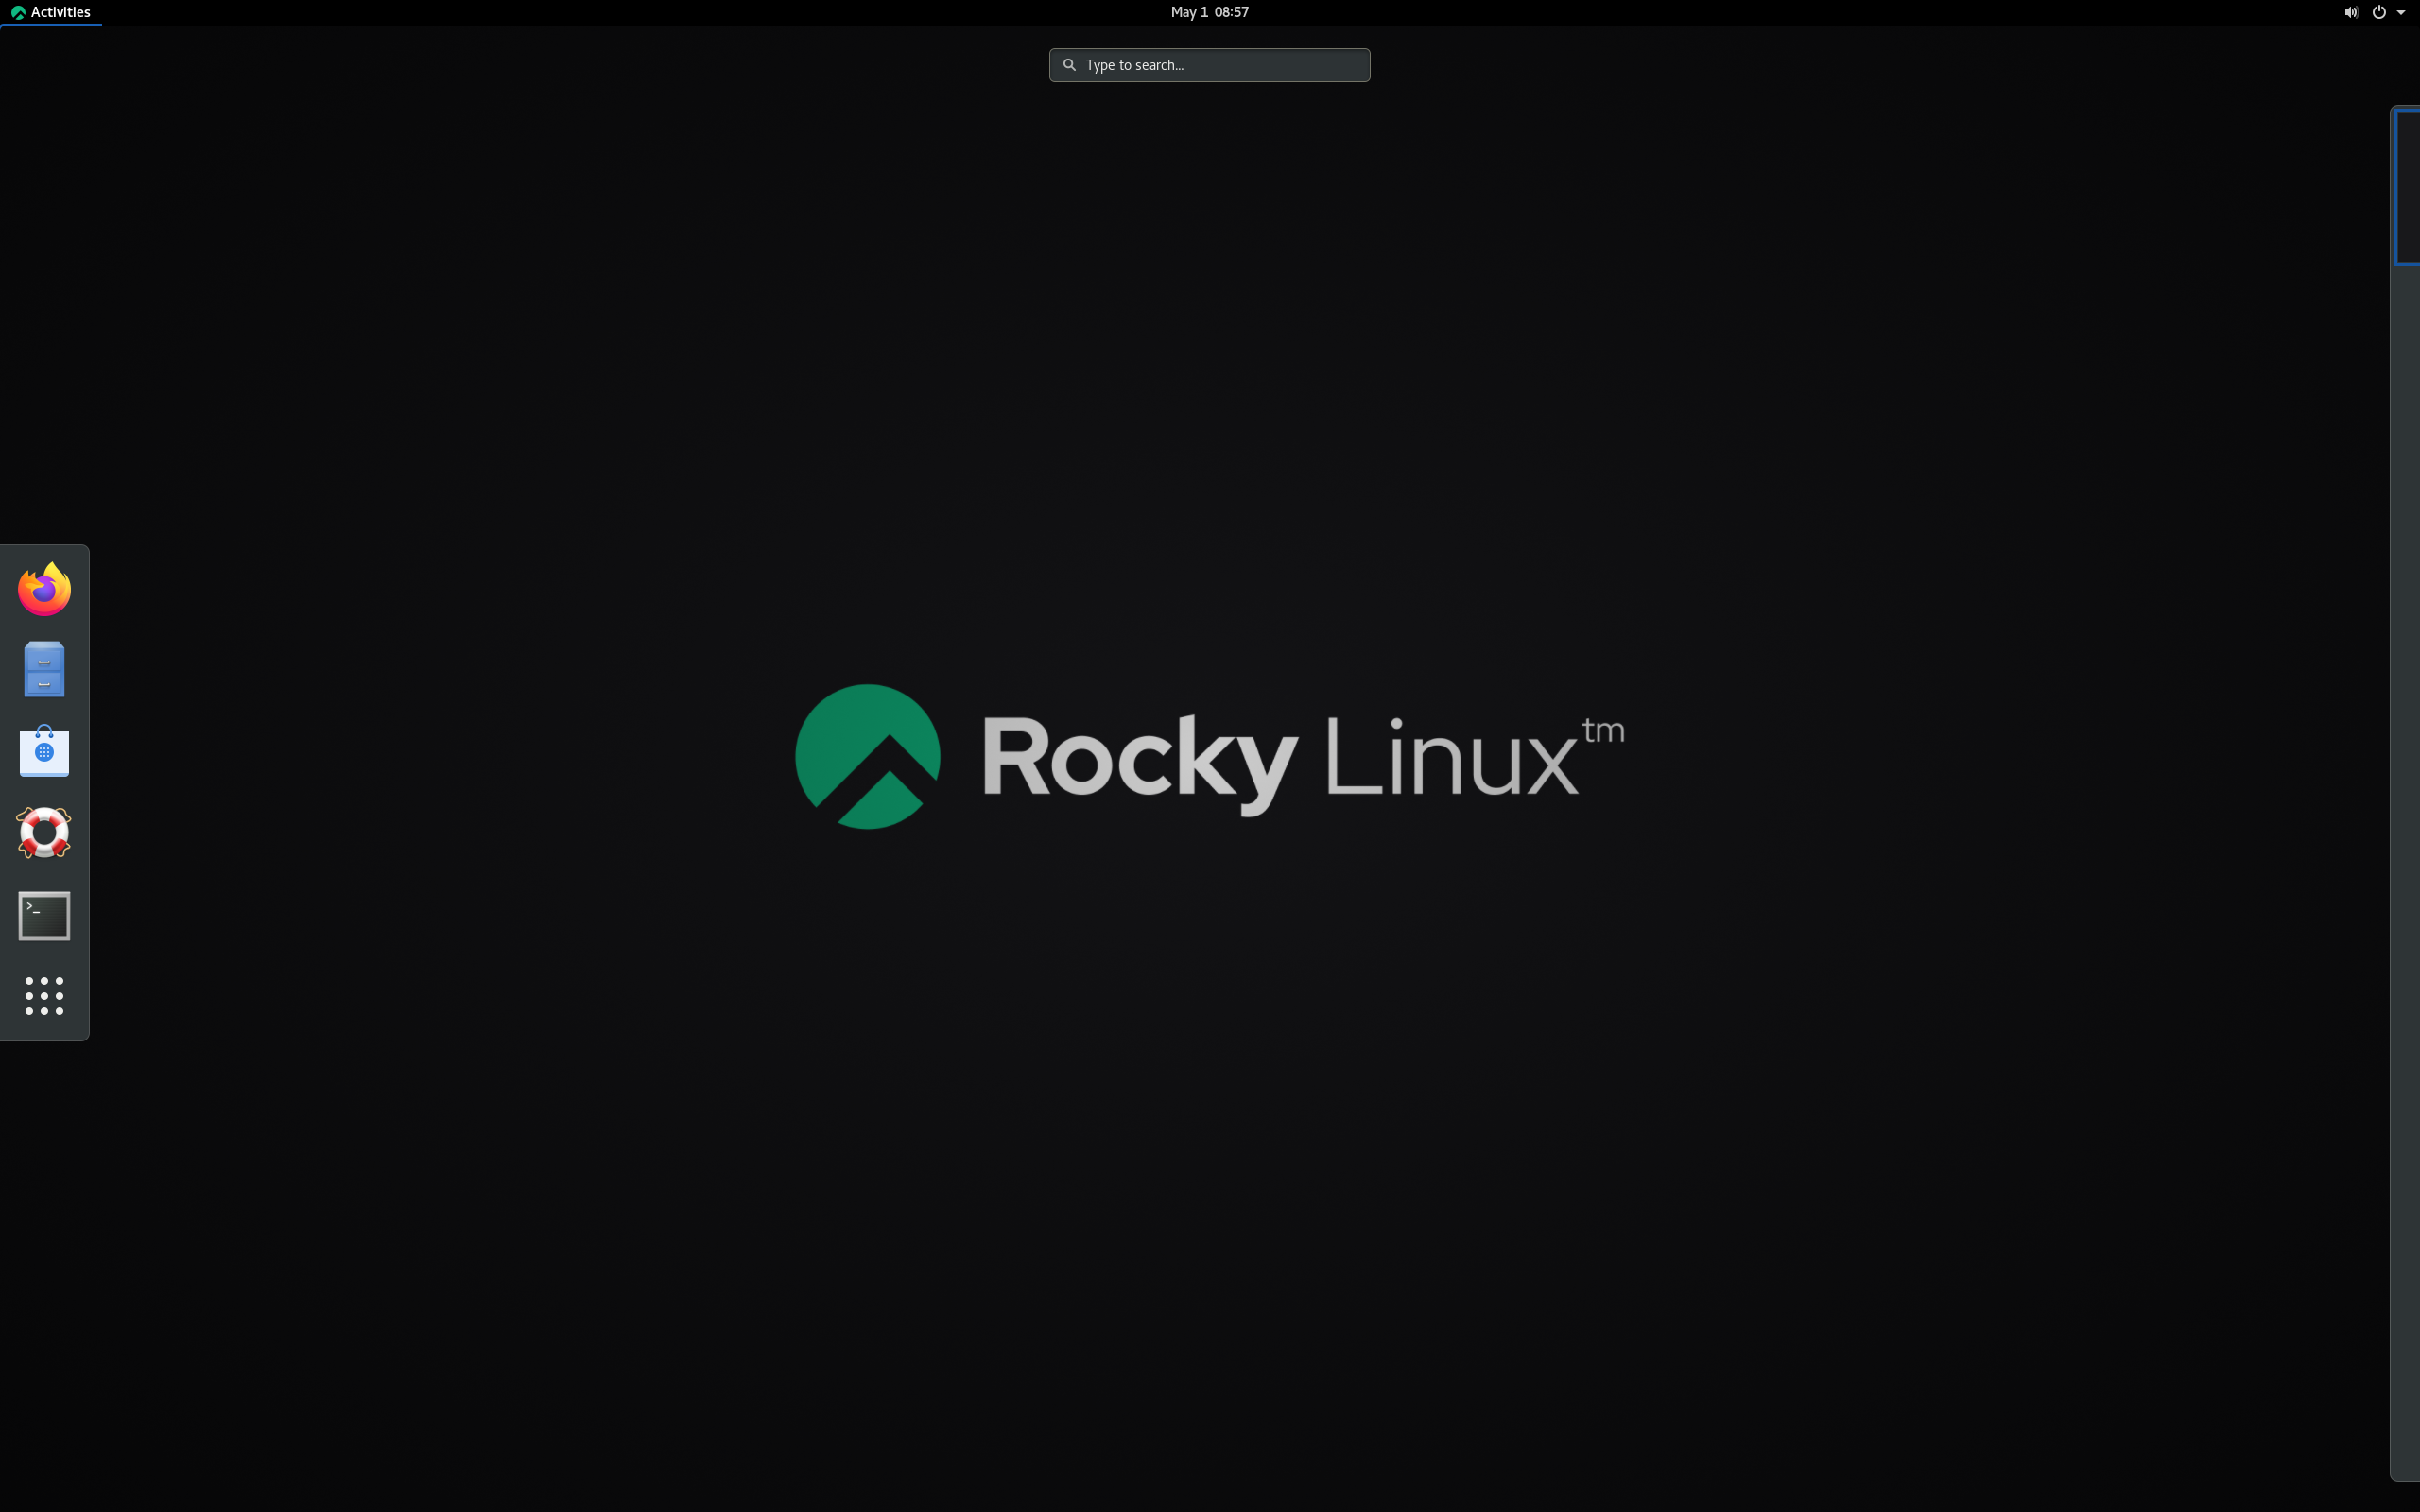 rocky linux